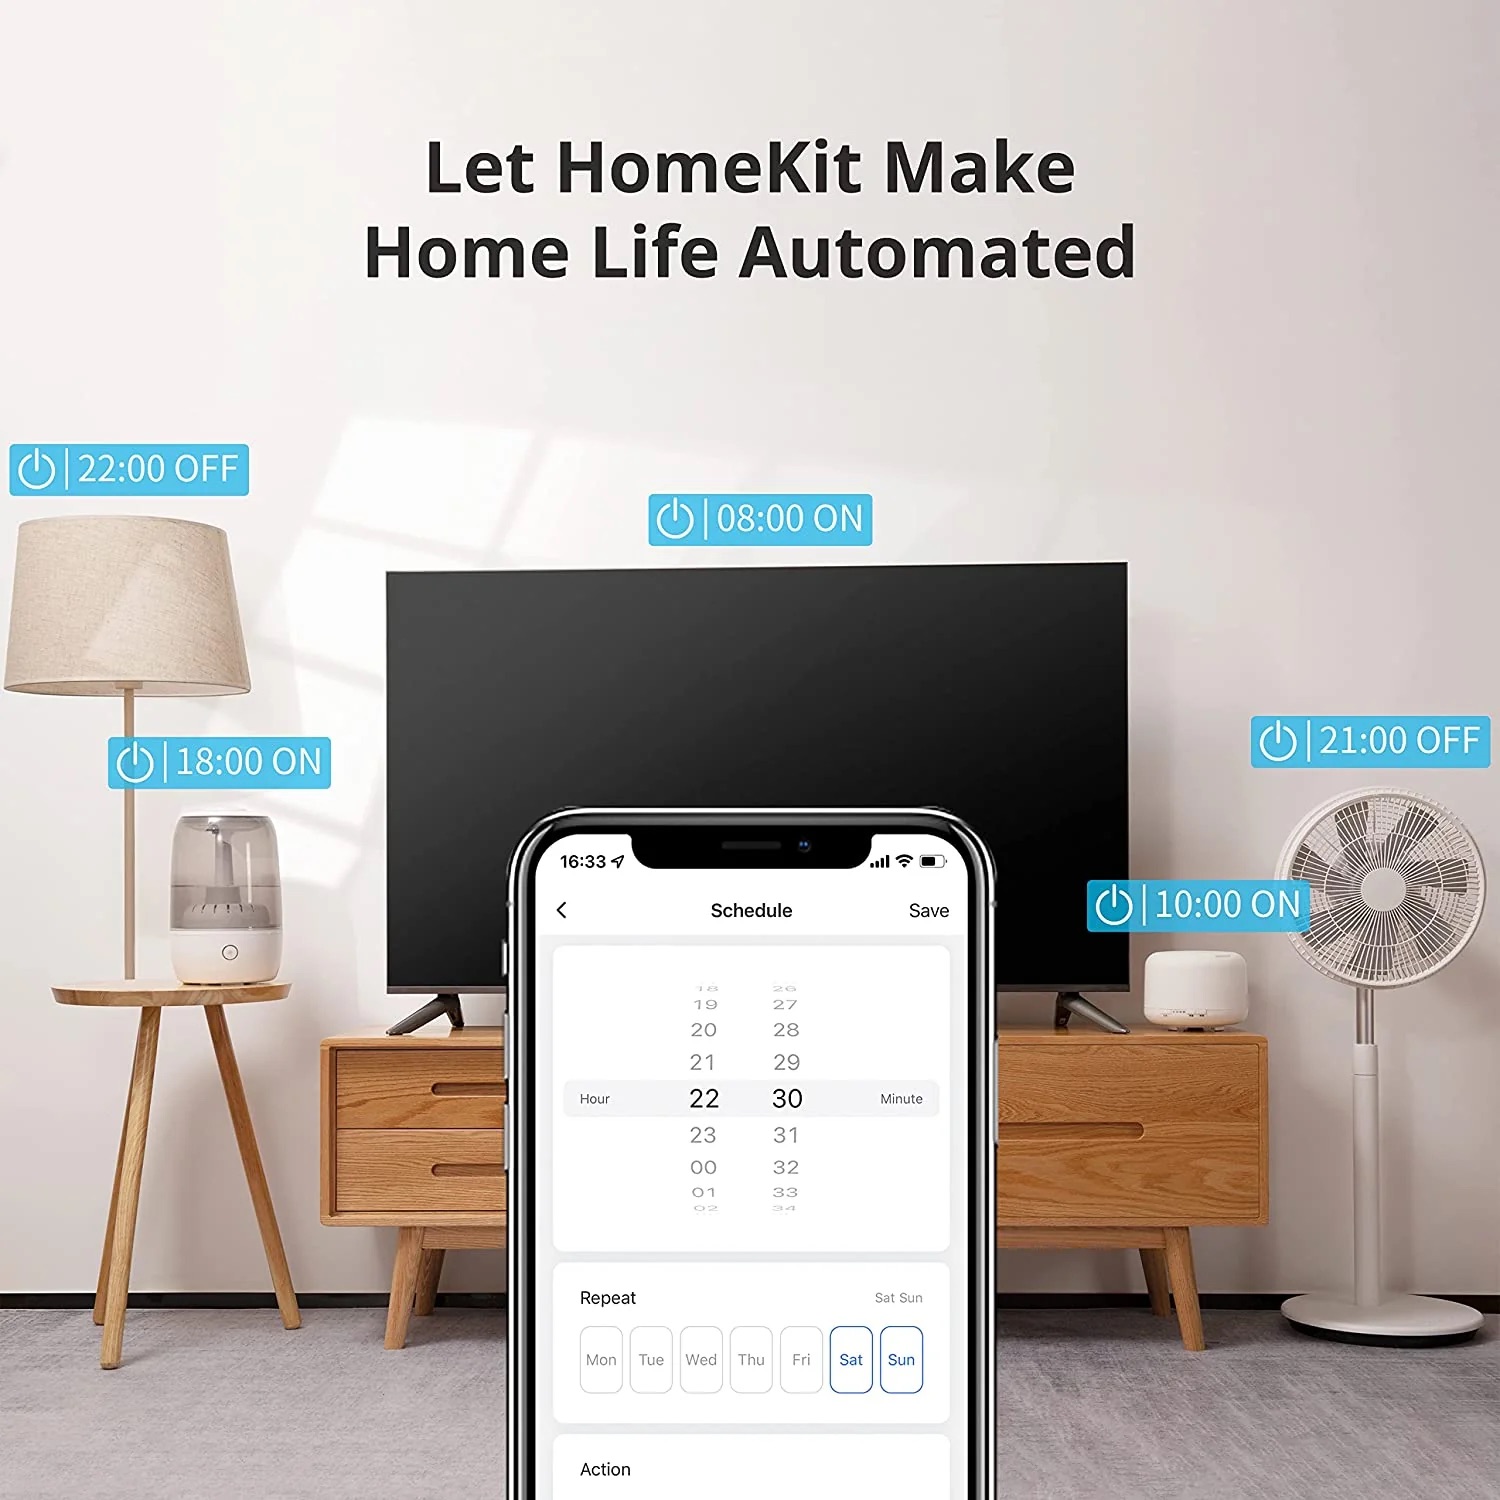 Ổ Cắm Điện Thông Minh Switchbot Plug Mini Phiên Bản Homekit - Akia Smart Home